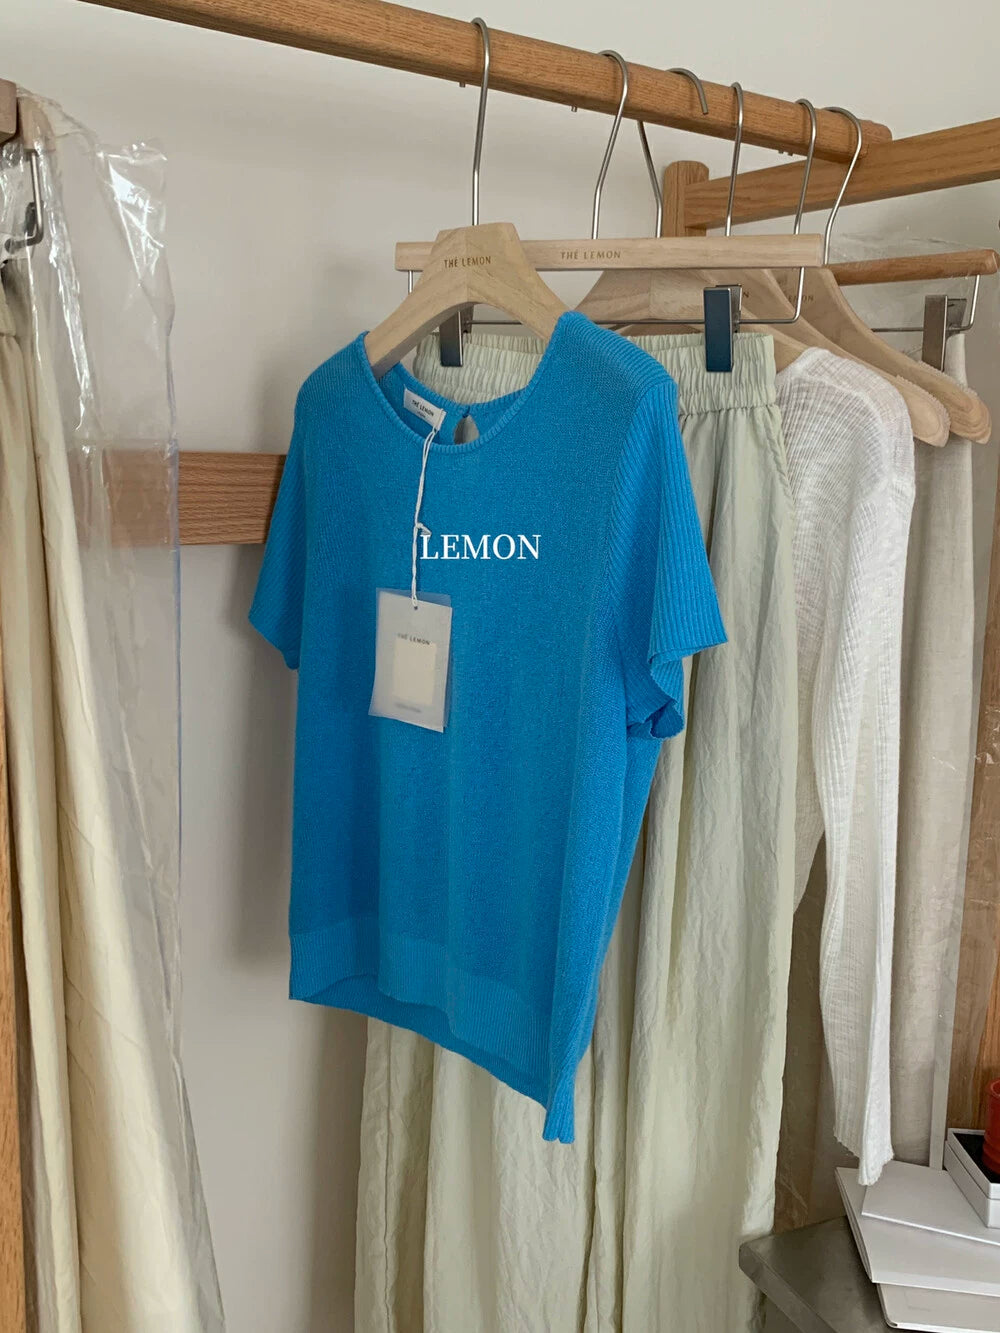 【LNM8027】實拍檸檬夏季薄款針織衫240503